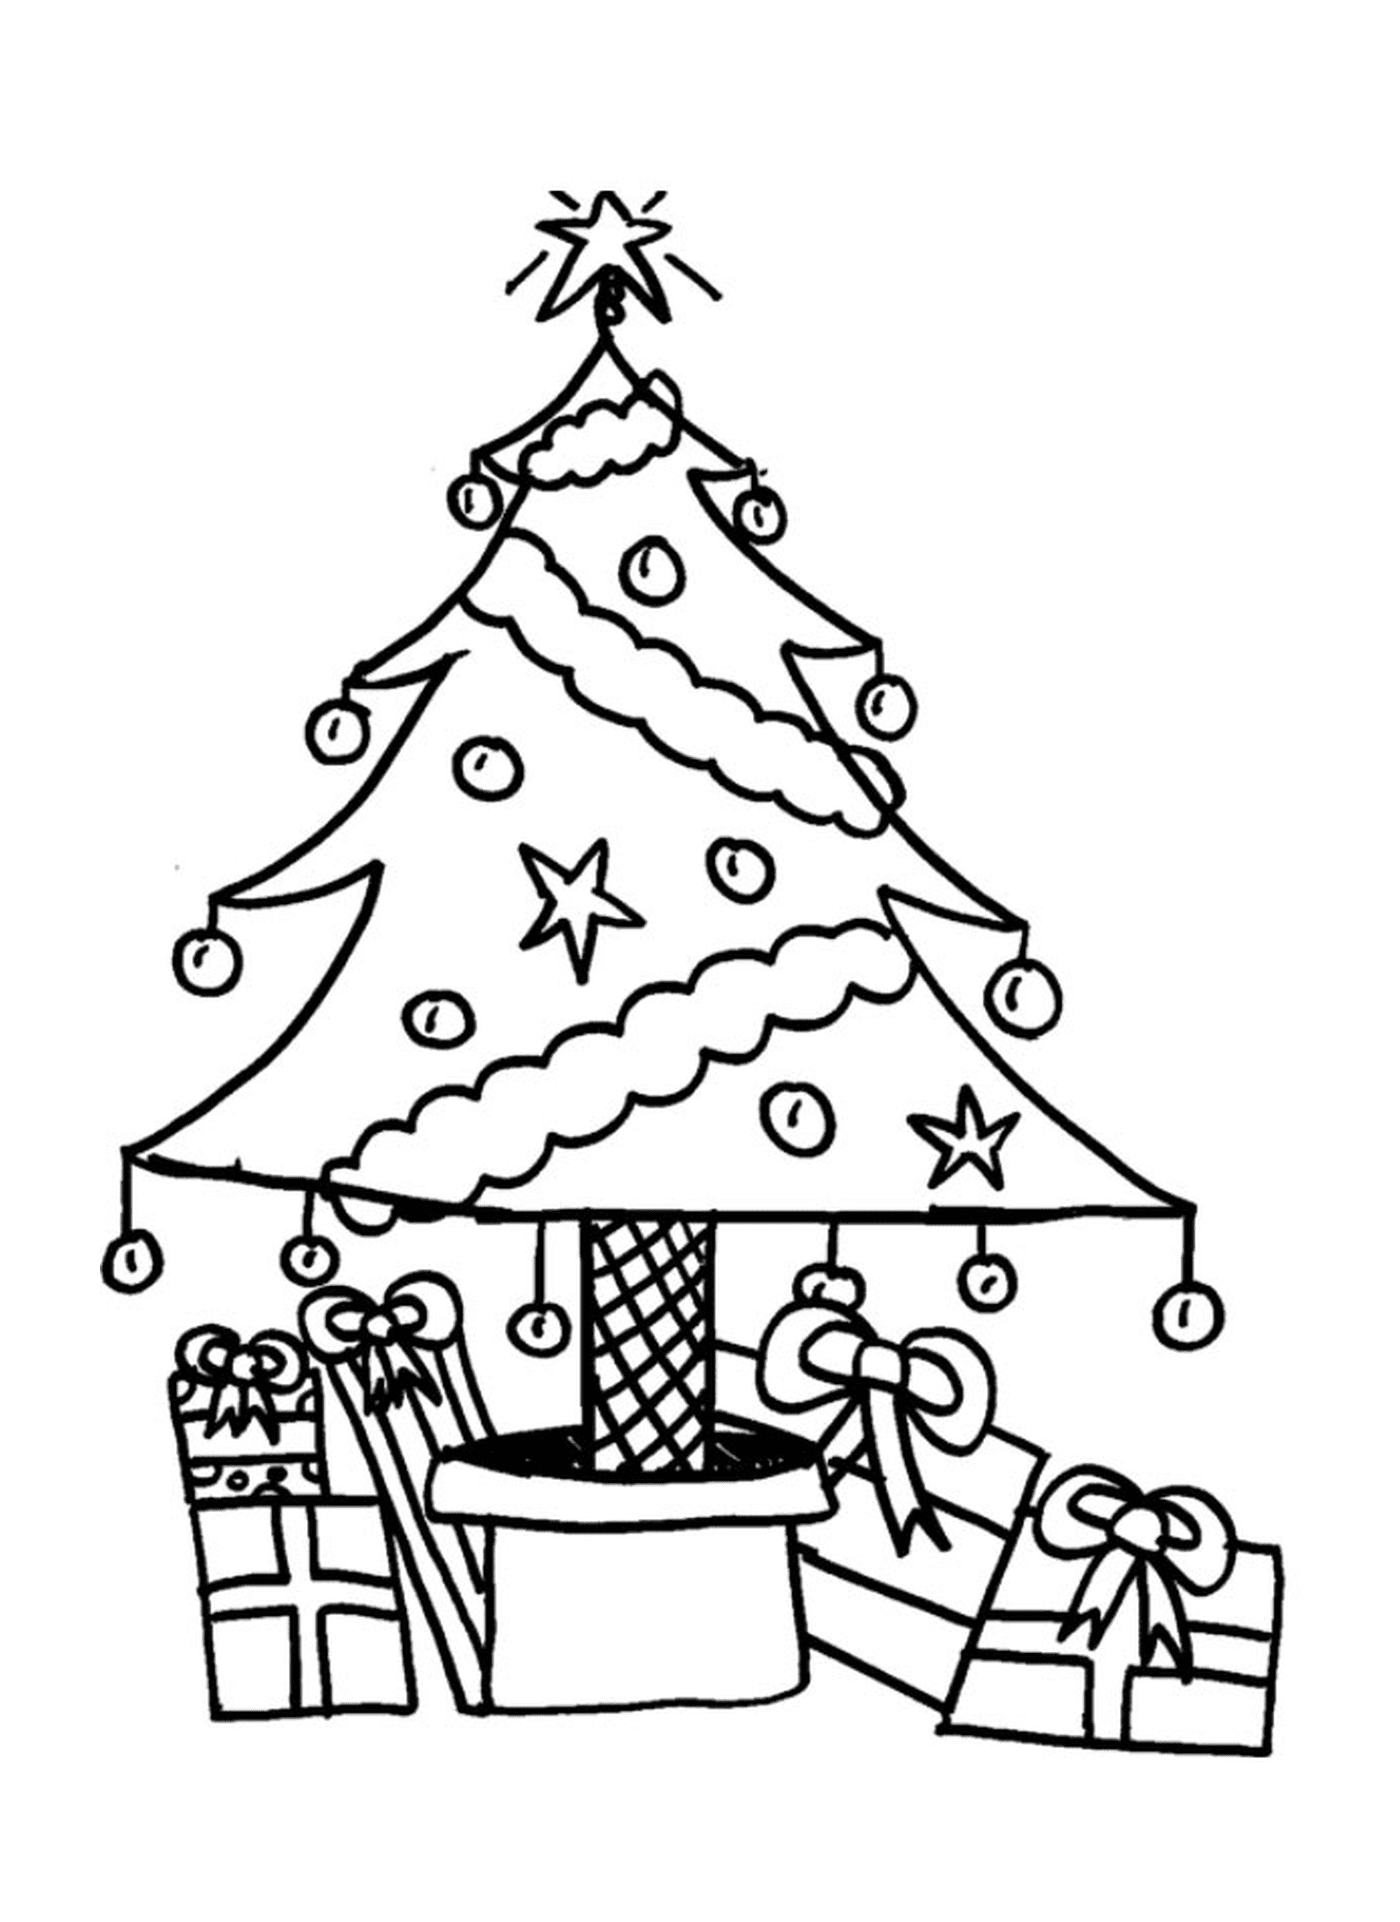  شجرة عيد الميلاد مع الهدايا تحتها 